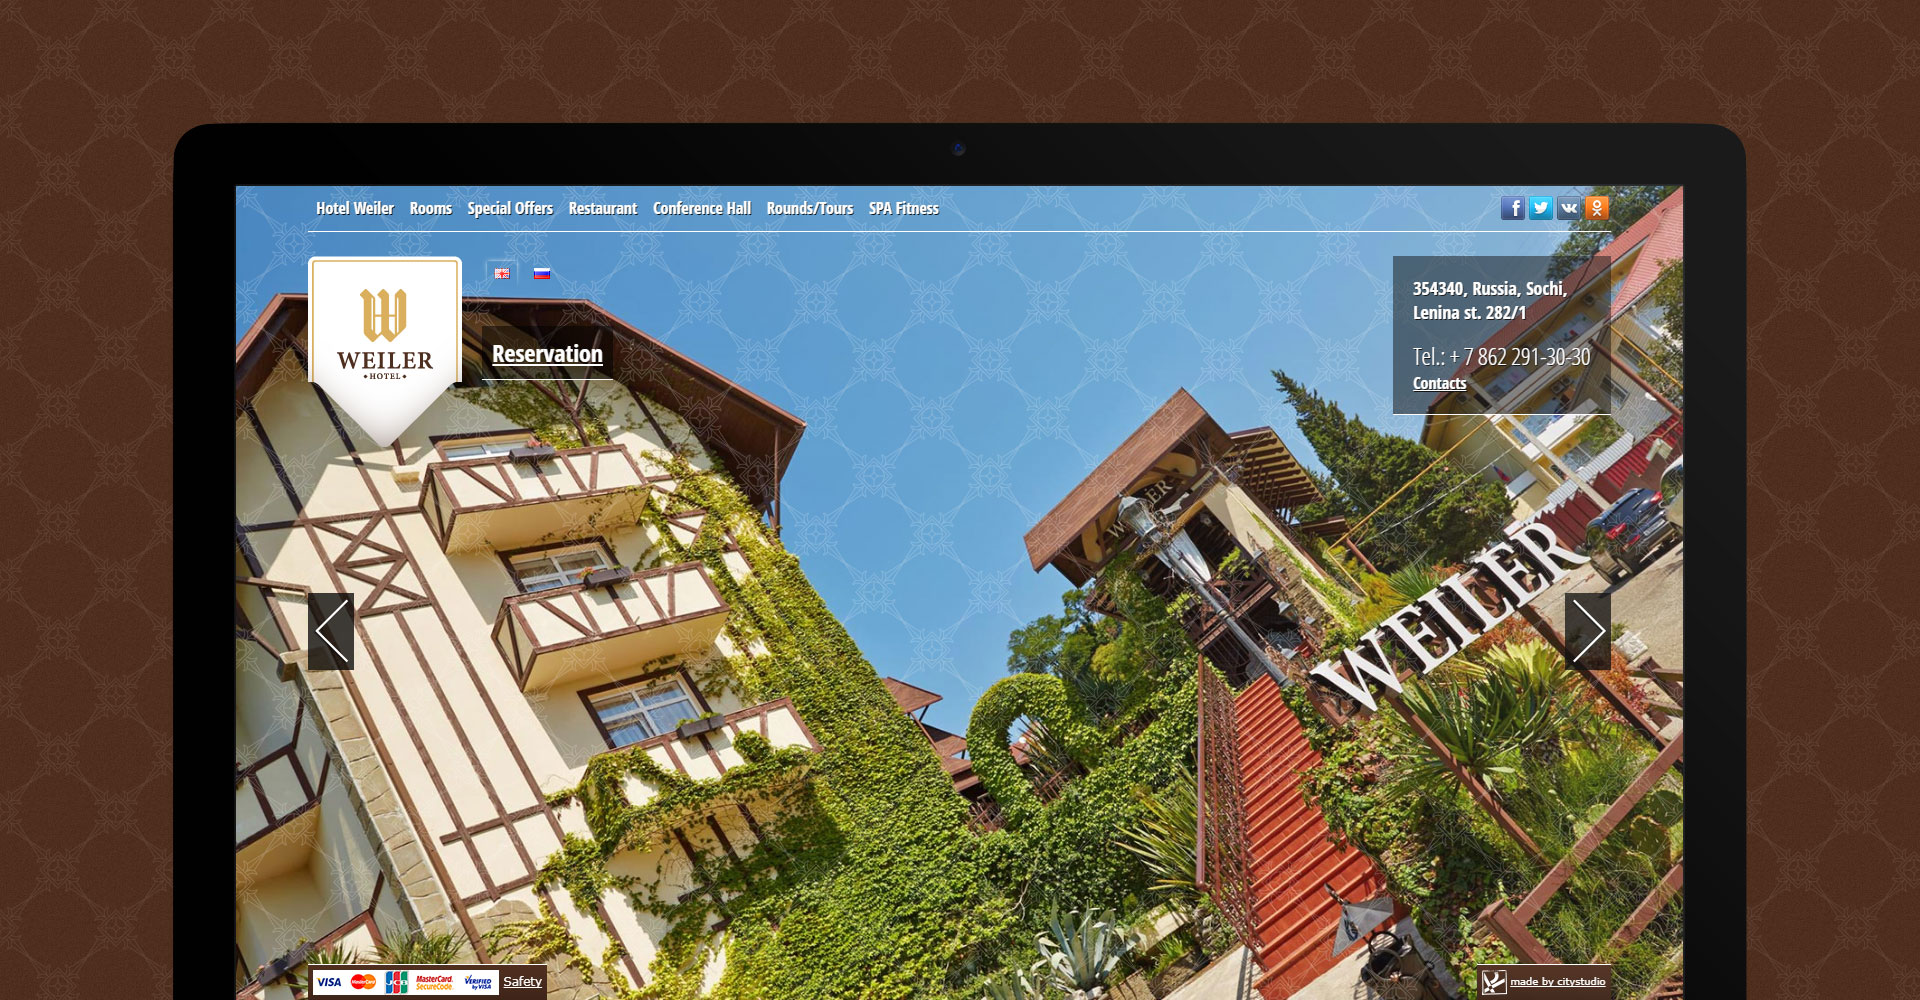 Weiler Hotel Website